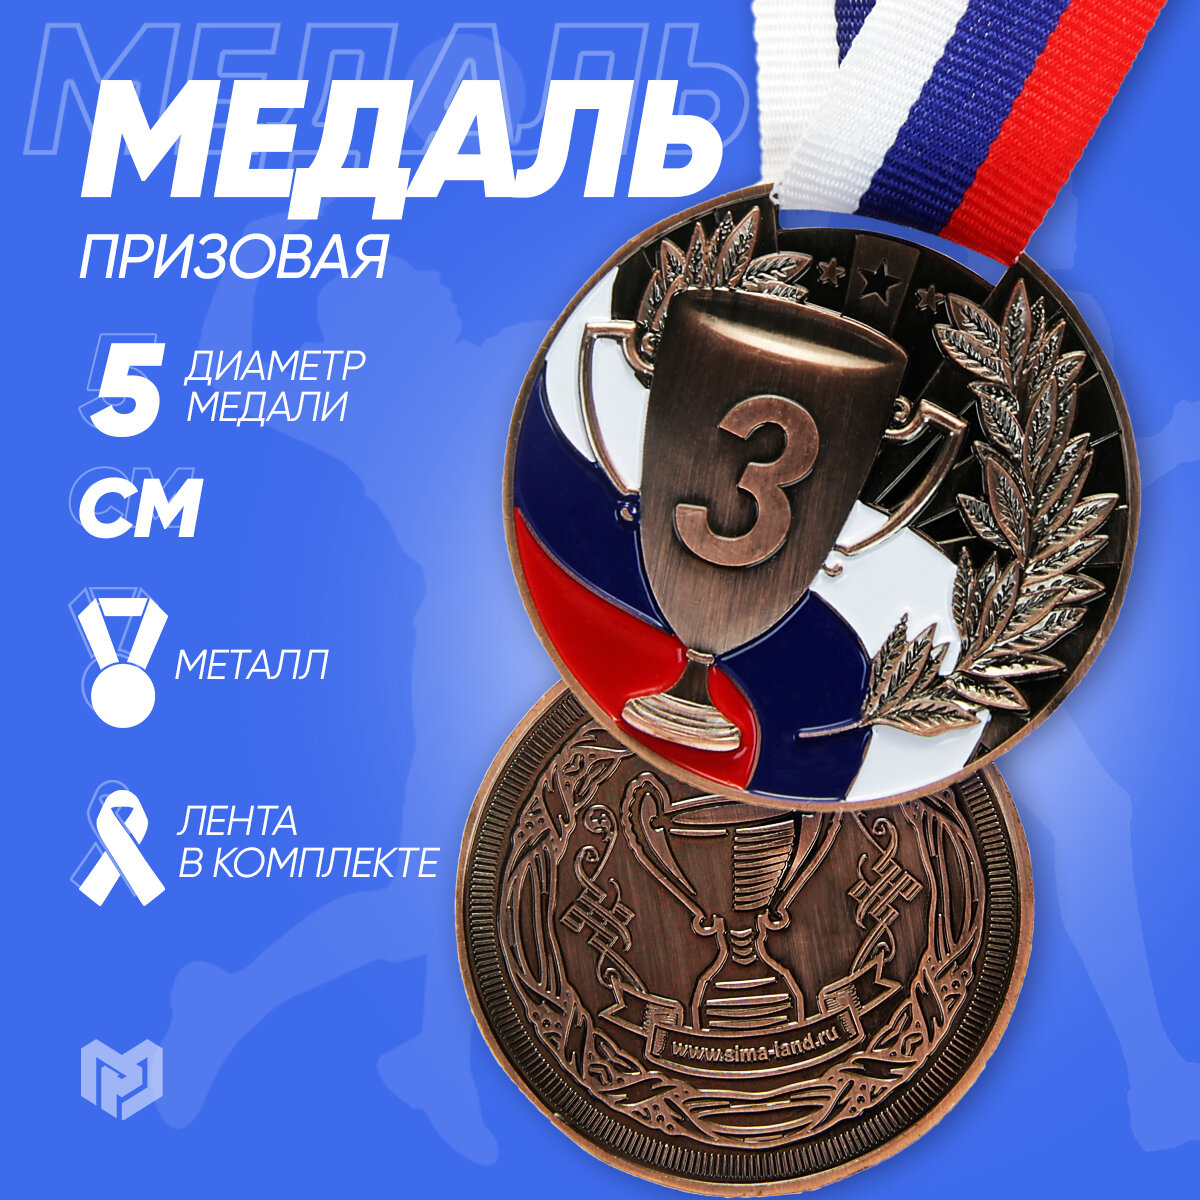 Медаль призовая 013 диам 5 см. 3 место, триколор, цвет бронз